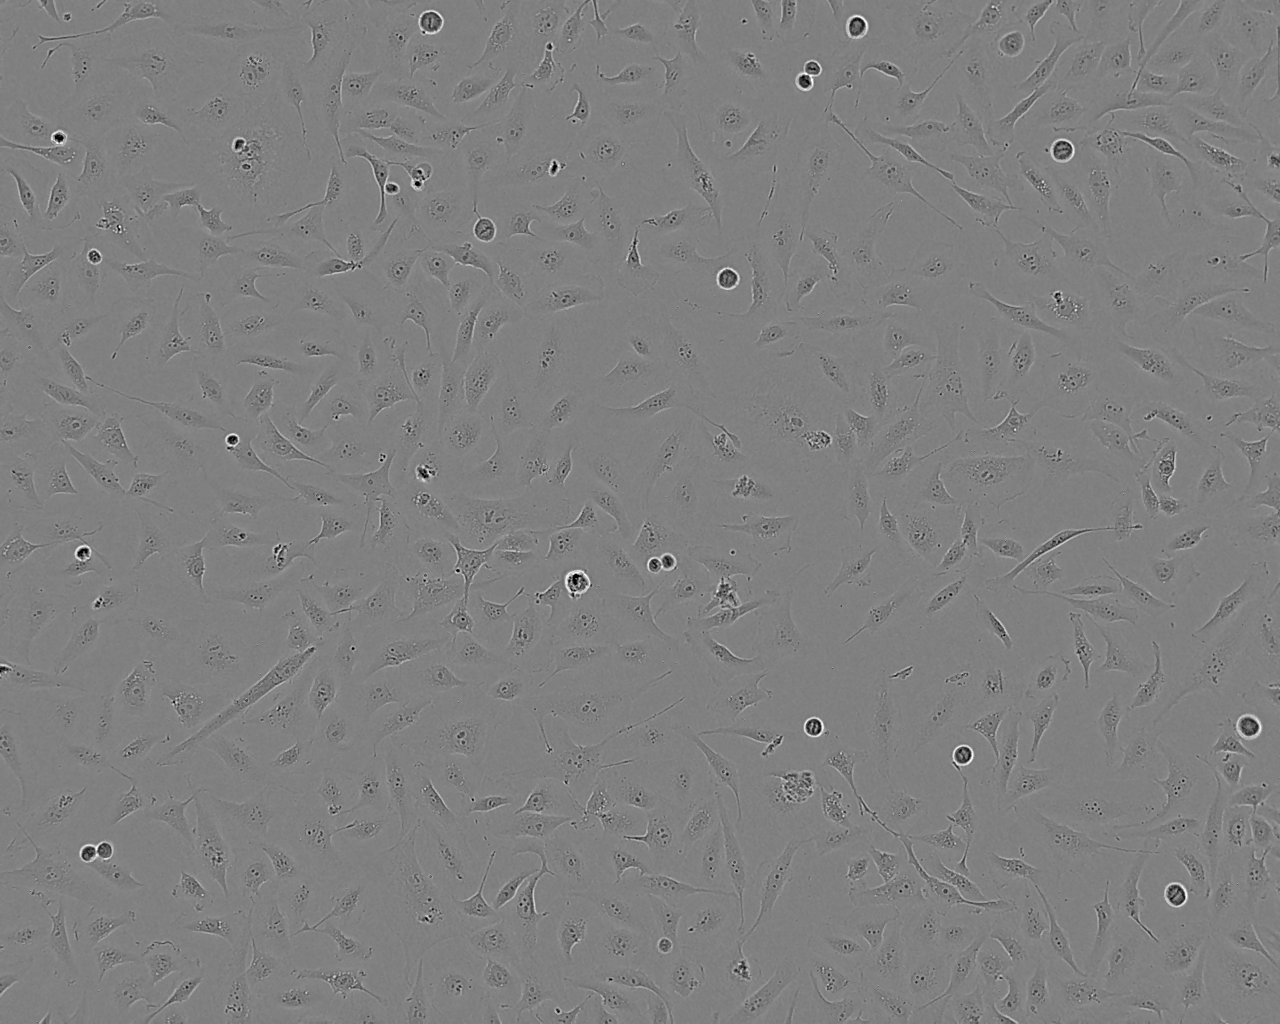 B16-F10 小鼠黑色素瘤细胞系